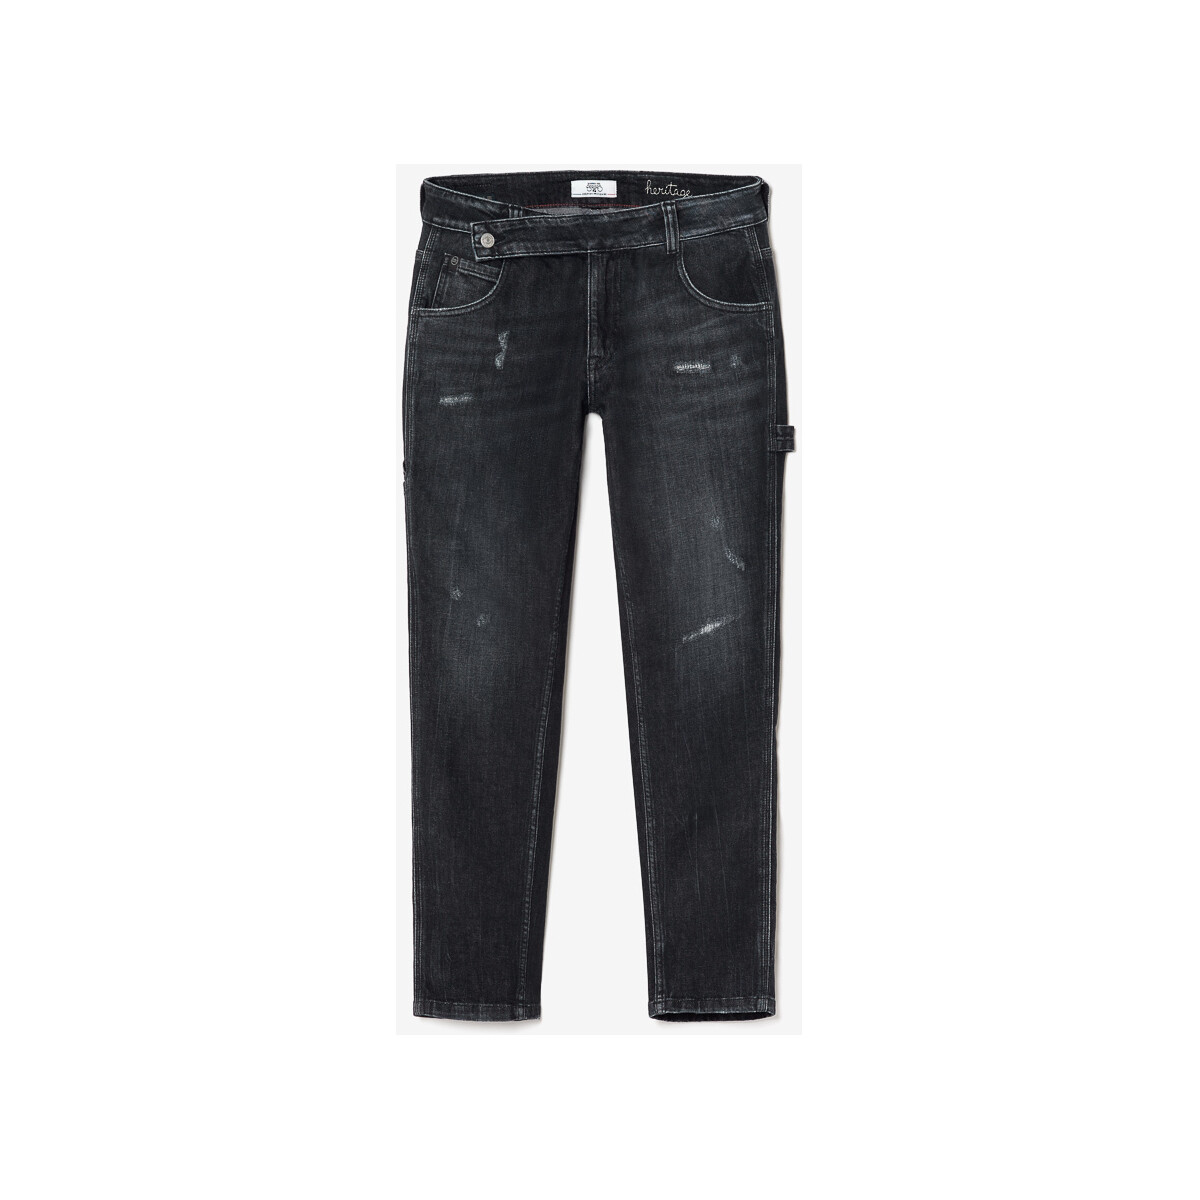 Le Temps des Cerises Noir Chara 200/43 boyfit jeans des